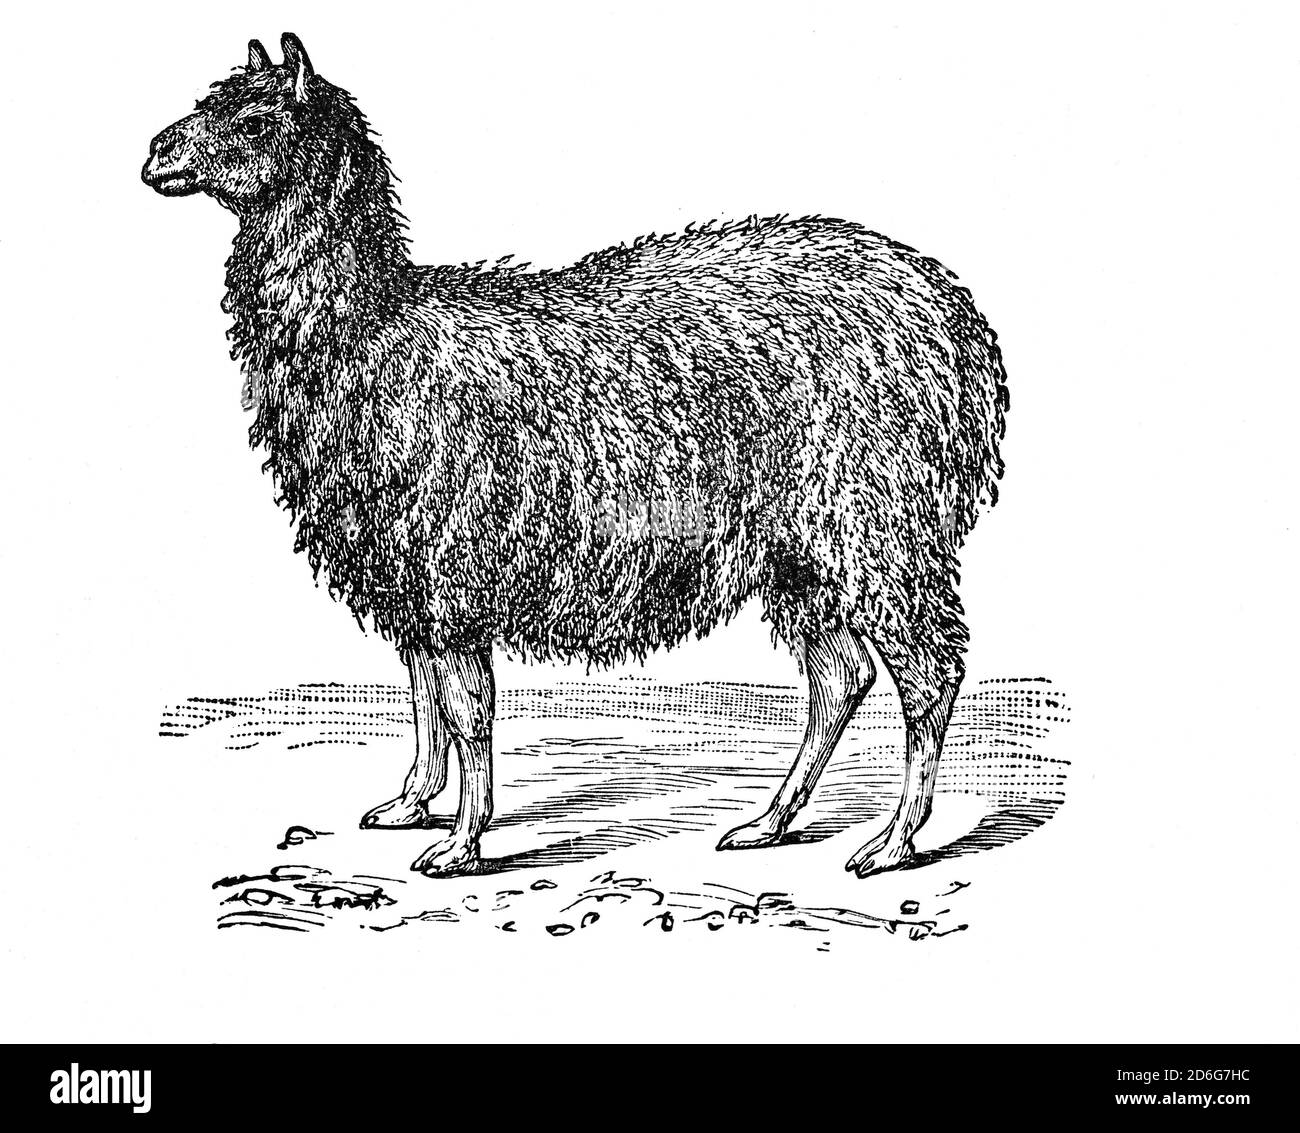 L'alpaga (Vicugna pacos) est une espèce de mammifères camélidés sud-américains souvent confondue avec le lama. Cependant, les alpagas sensiblement plus petits que les lamas sont gardés dans des troupeaux qui se broutent sur les hauteurs des Andes. Ils ont été élevés spécifiquement pour leurs fibres utilisées pour la fabrication d'articles tricotés et tissés, semblables à la laine de mouton. Banque D'Images